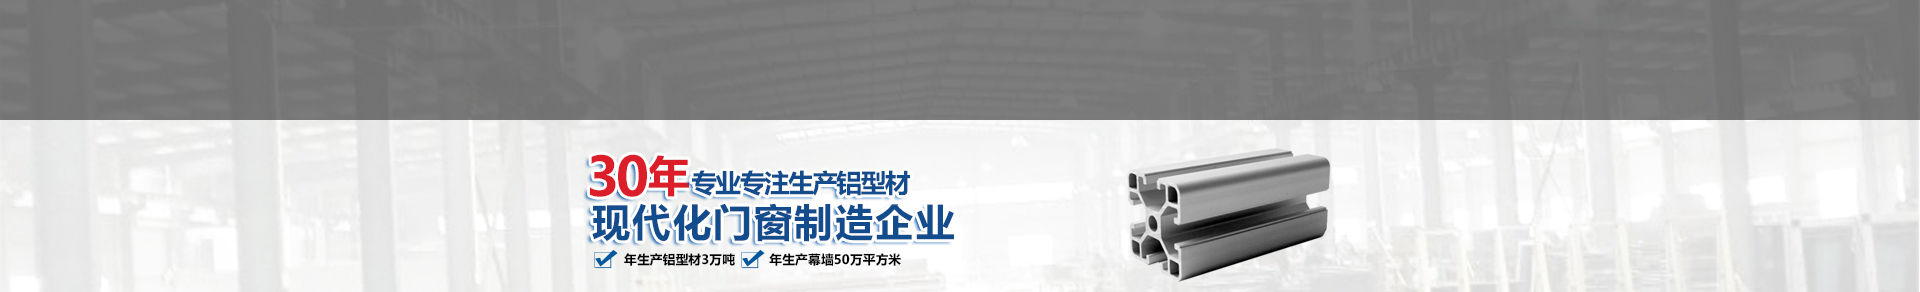 吉林省烟草公司长春市公司2023-2024保洁劳务外包及玻璃清洗服务中标成果公告